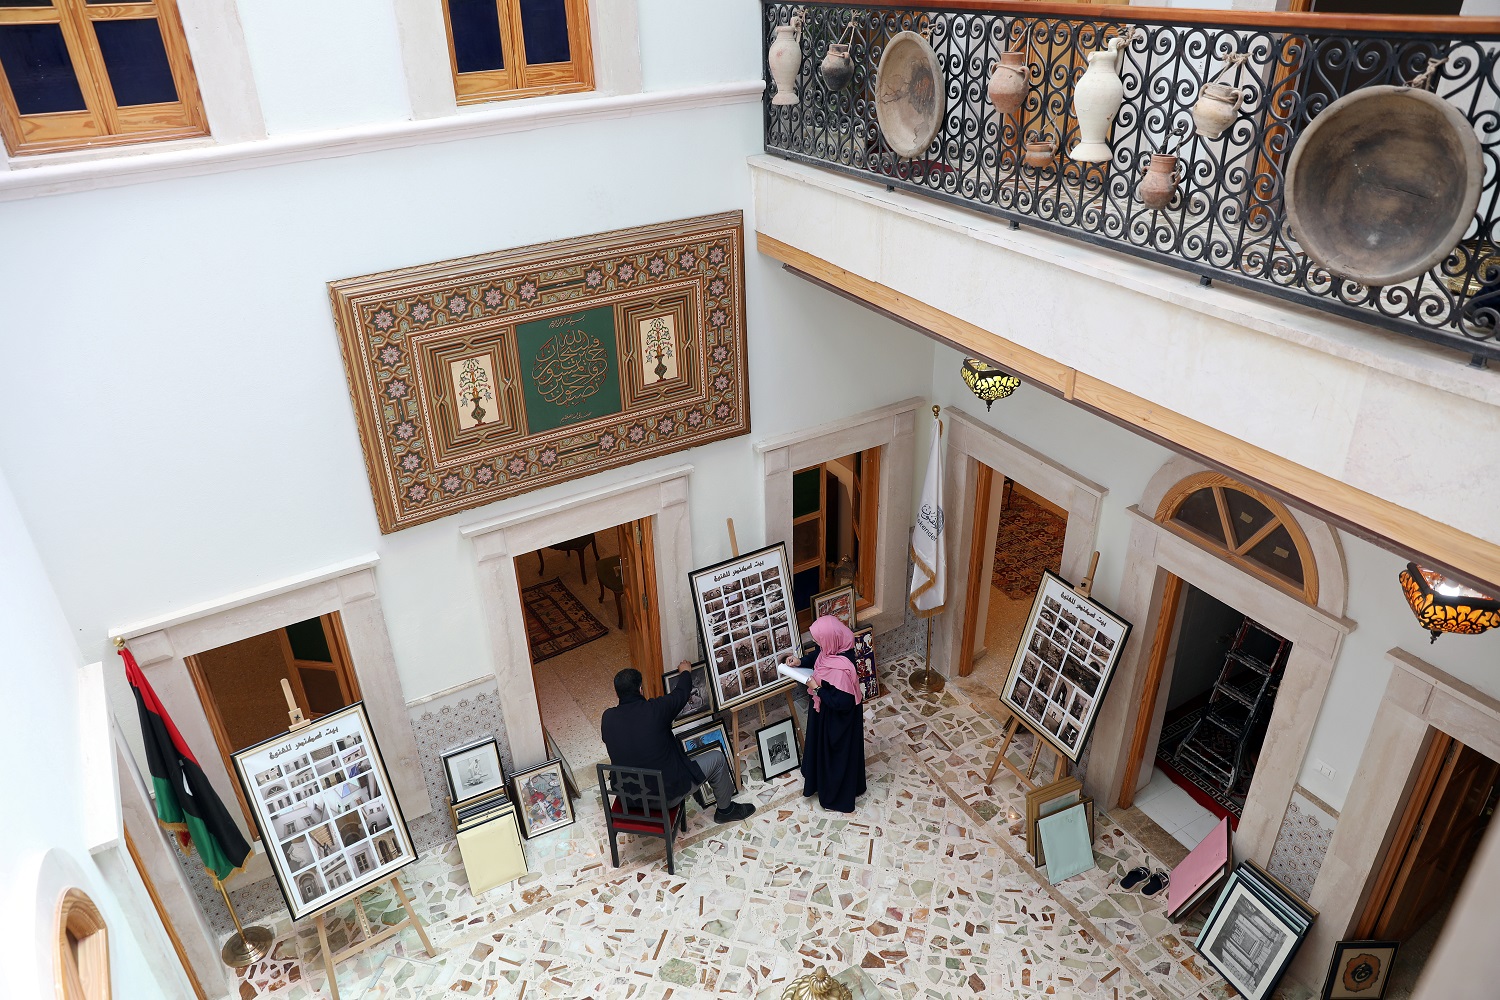 فنانون ليبيون يعملون في معرض للوحاتهم في العاصمة الليبية، طرابلس، 23 أبريل 2019. أحمد جادالله/ رويترز 